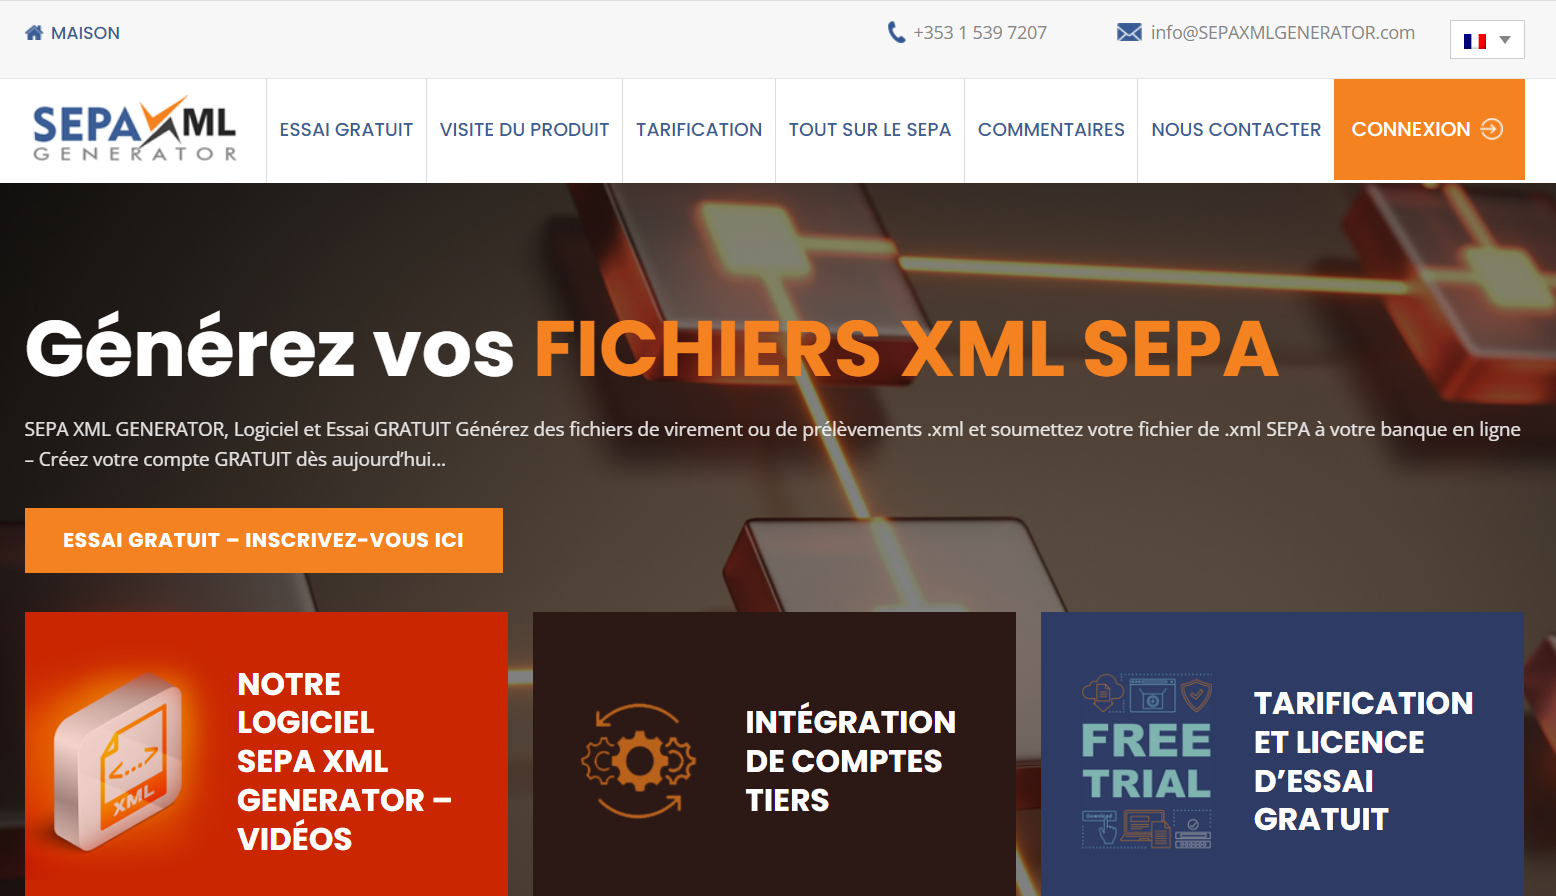 Strona SEPA XML GENERATOR jest teraz w języku francuskim